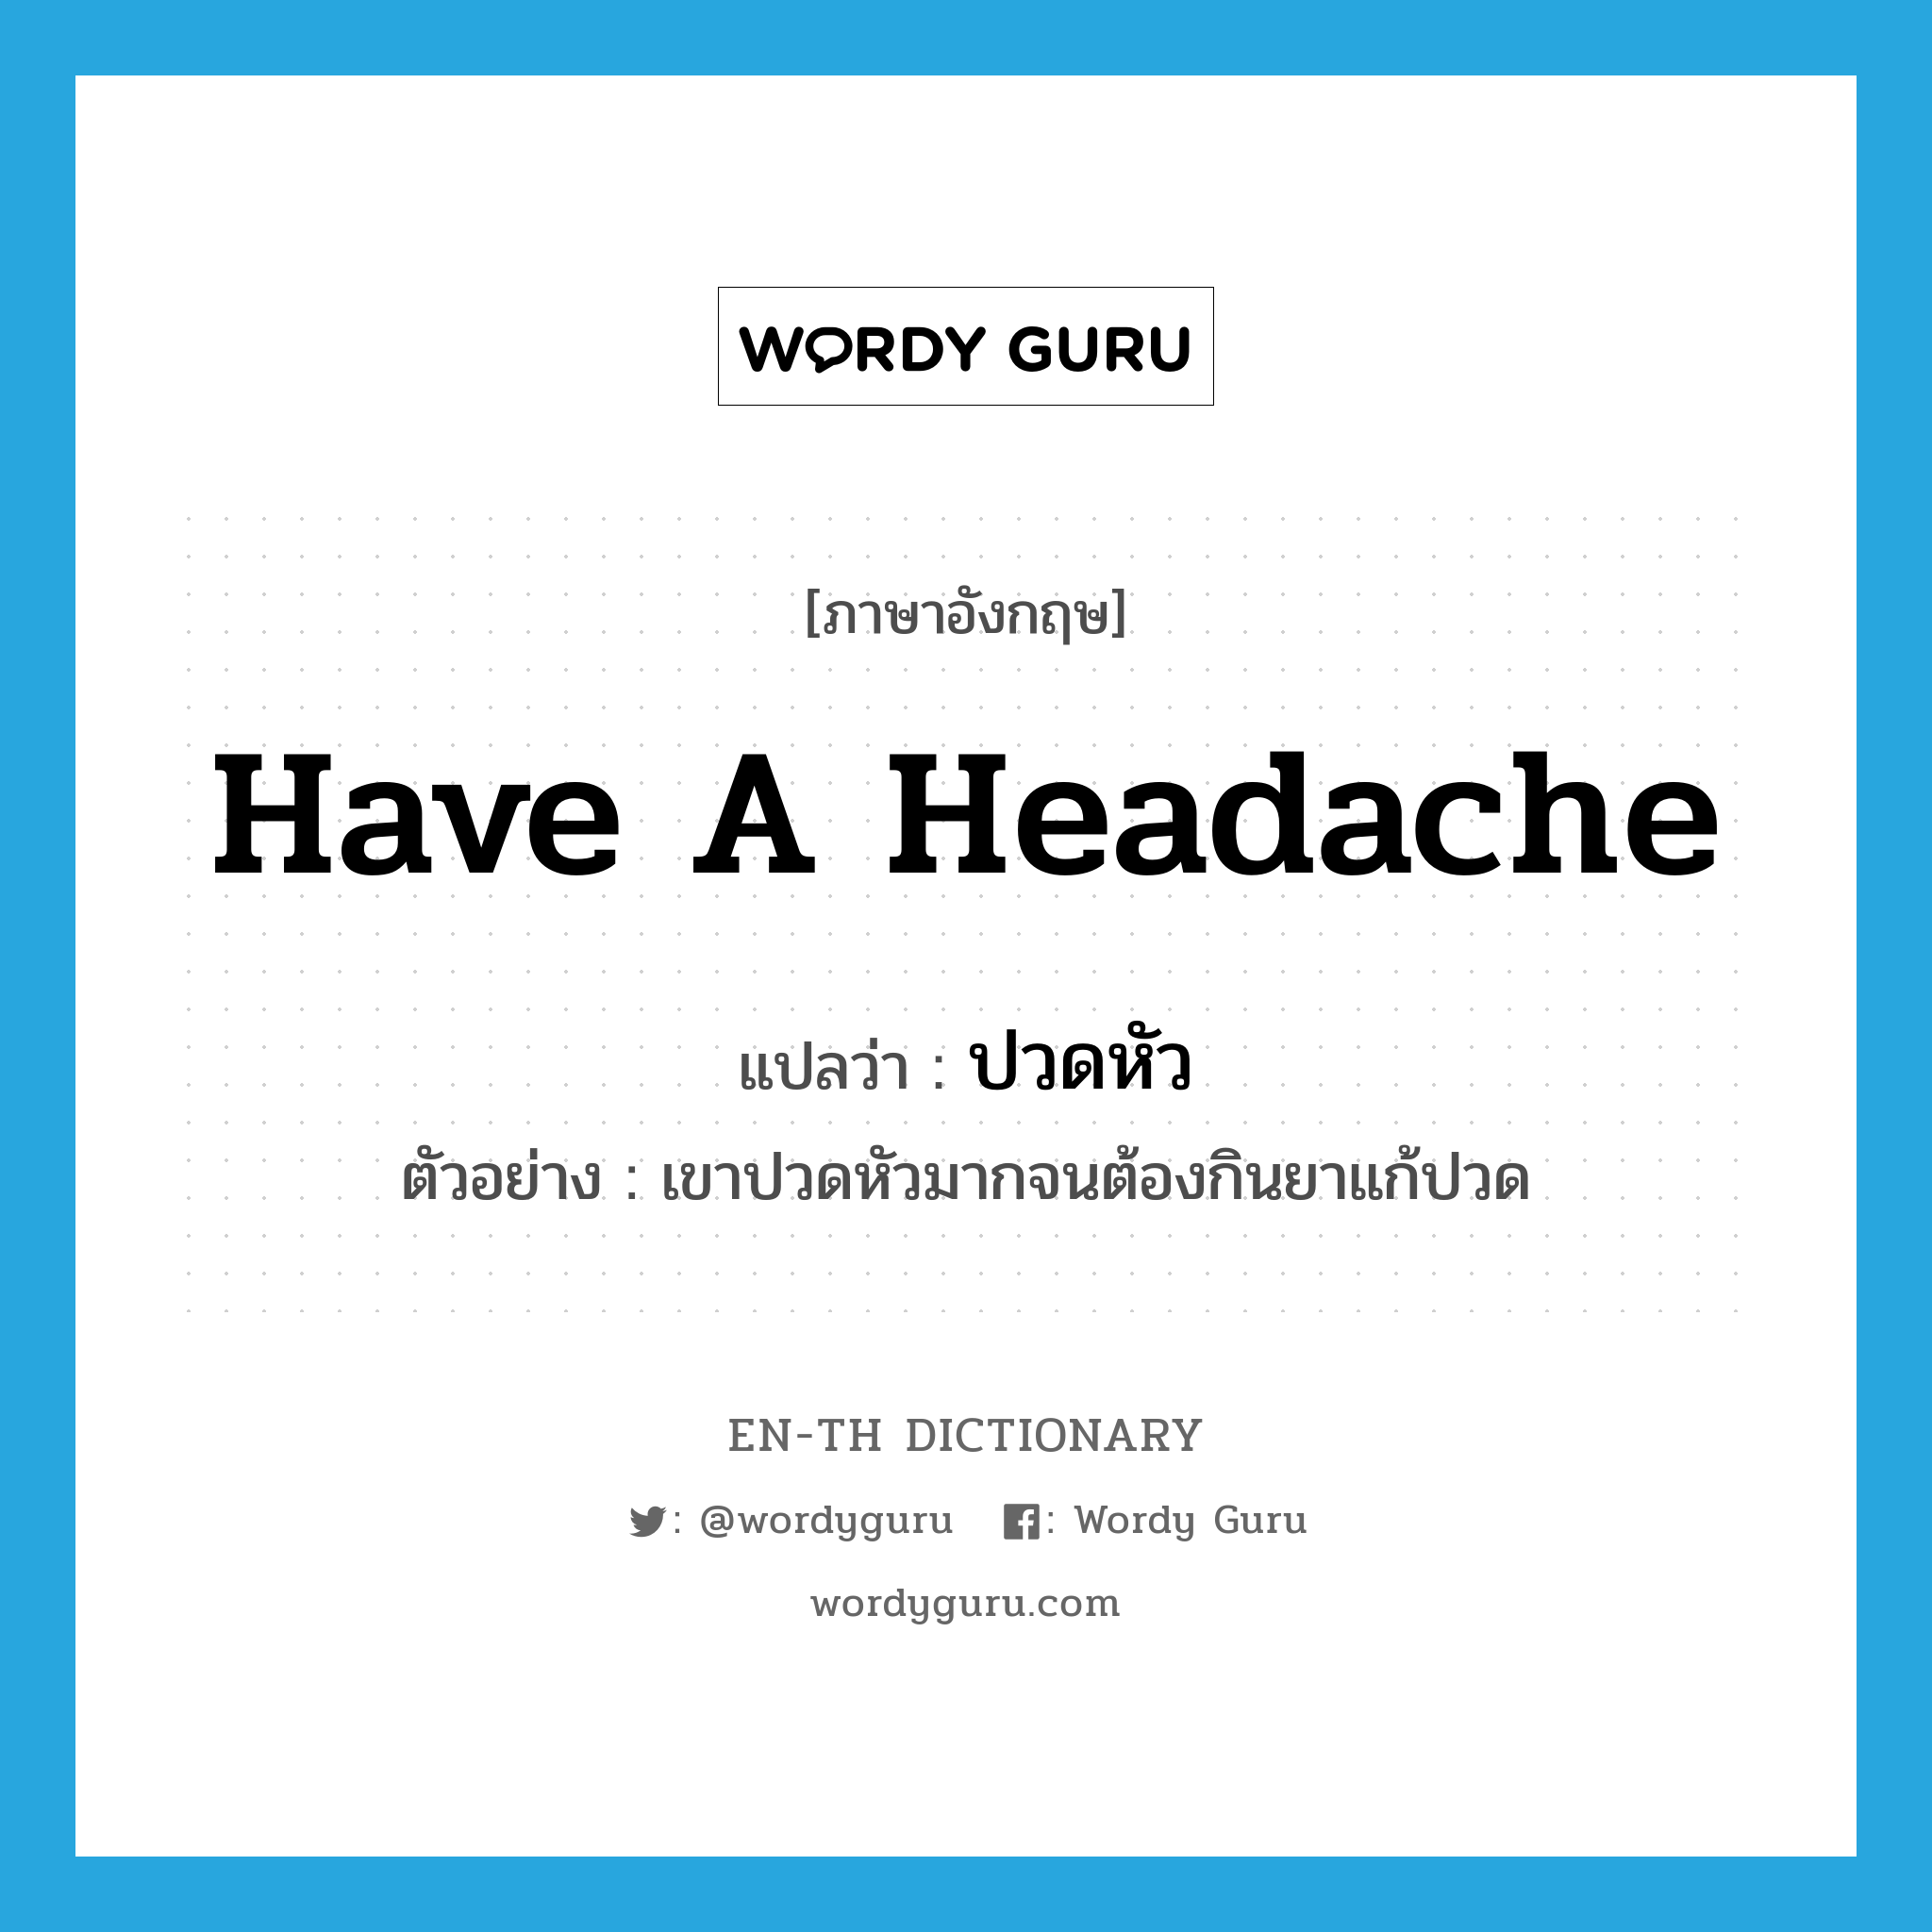 ปวดหัว ภาษาอังกฤษ?, คำศัพท์ภาษาอังกฤษ ปวดหัว แปลว่า have a headache ประเภท V ตัวอย่าง เขาปวดหัวมากจนต้องกินยาแก้ปวด หมวด V